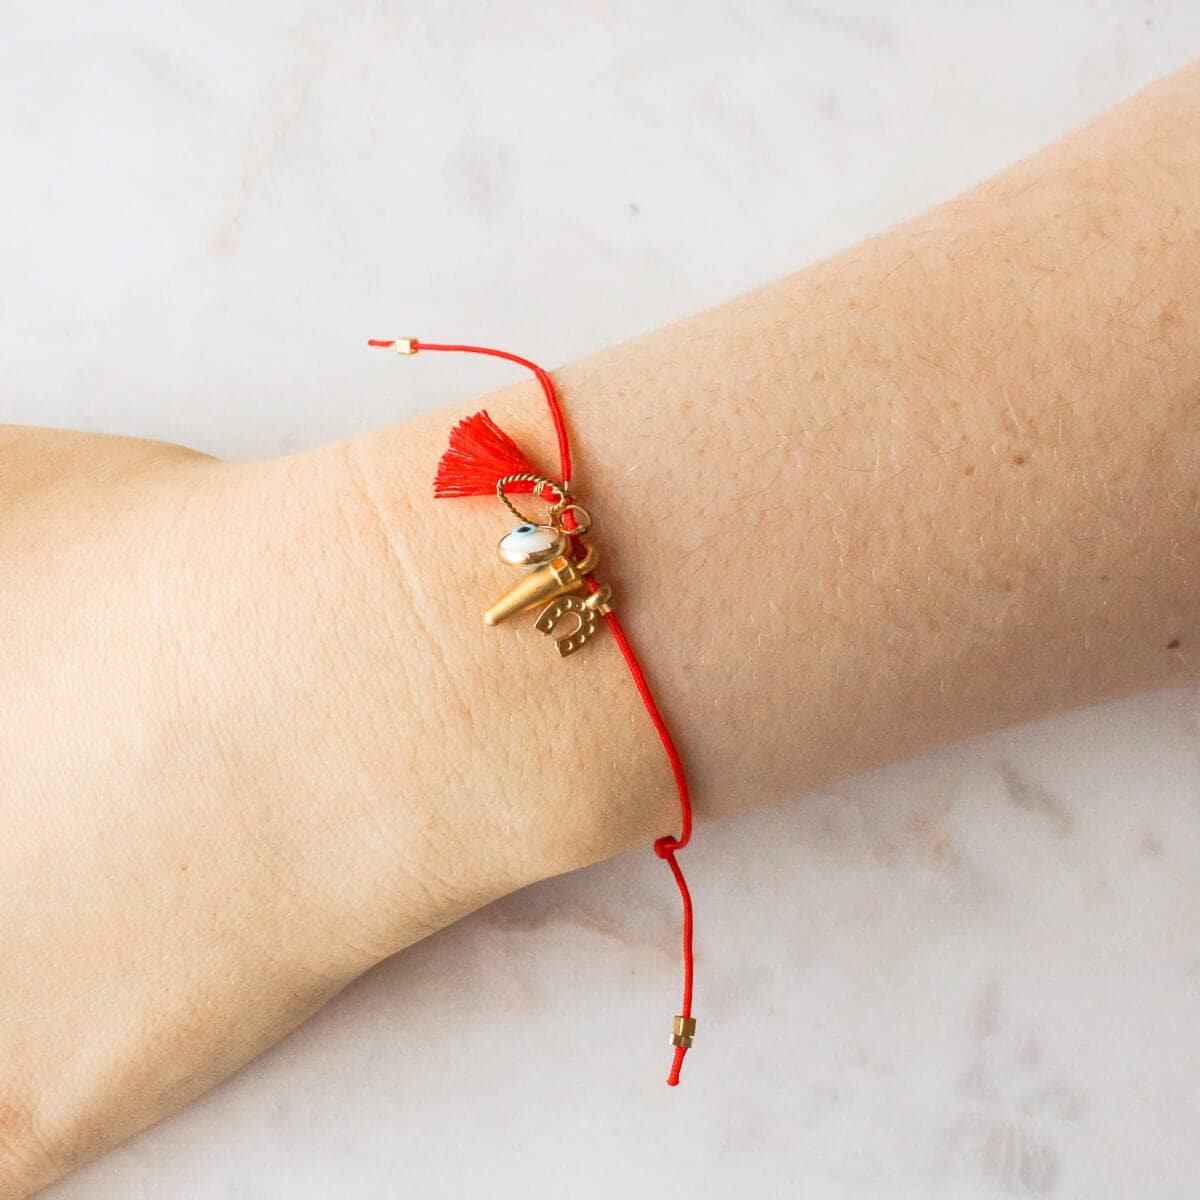 Elephant & Heart & Rose Charm Bangle Bracelet Decorative